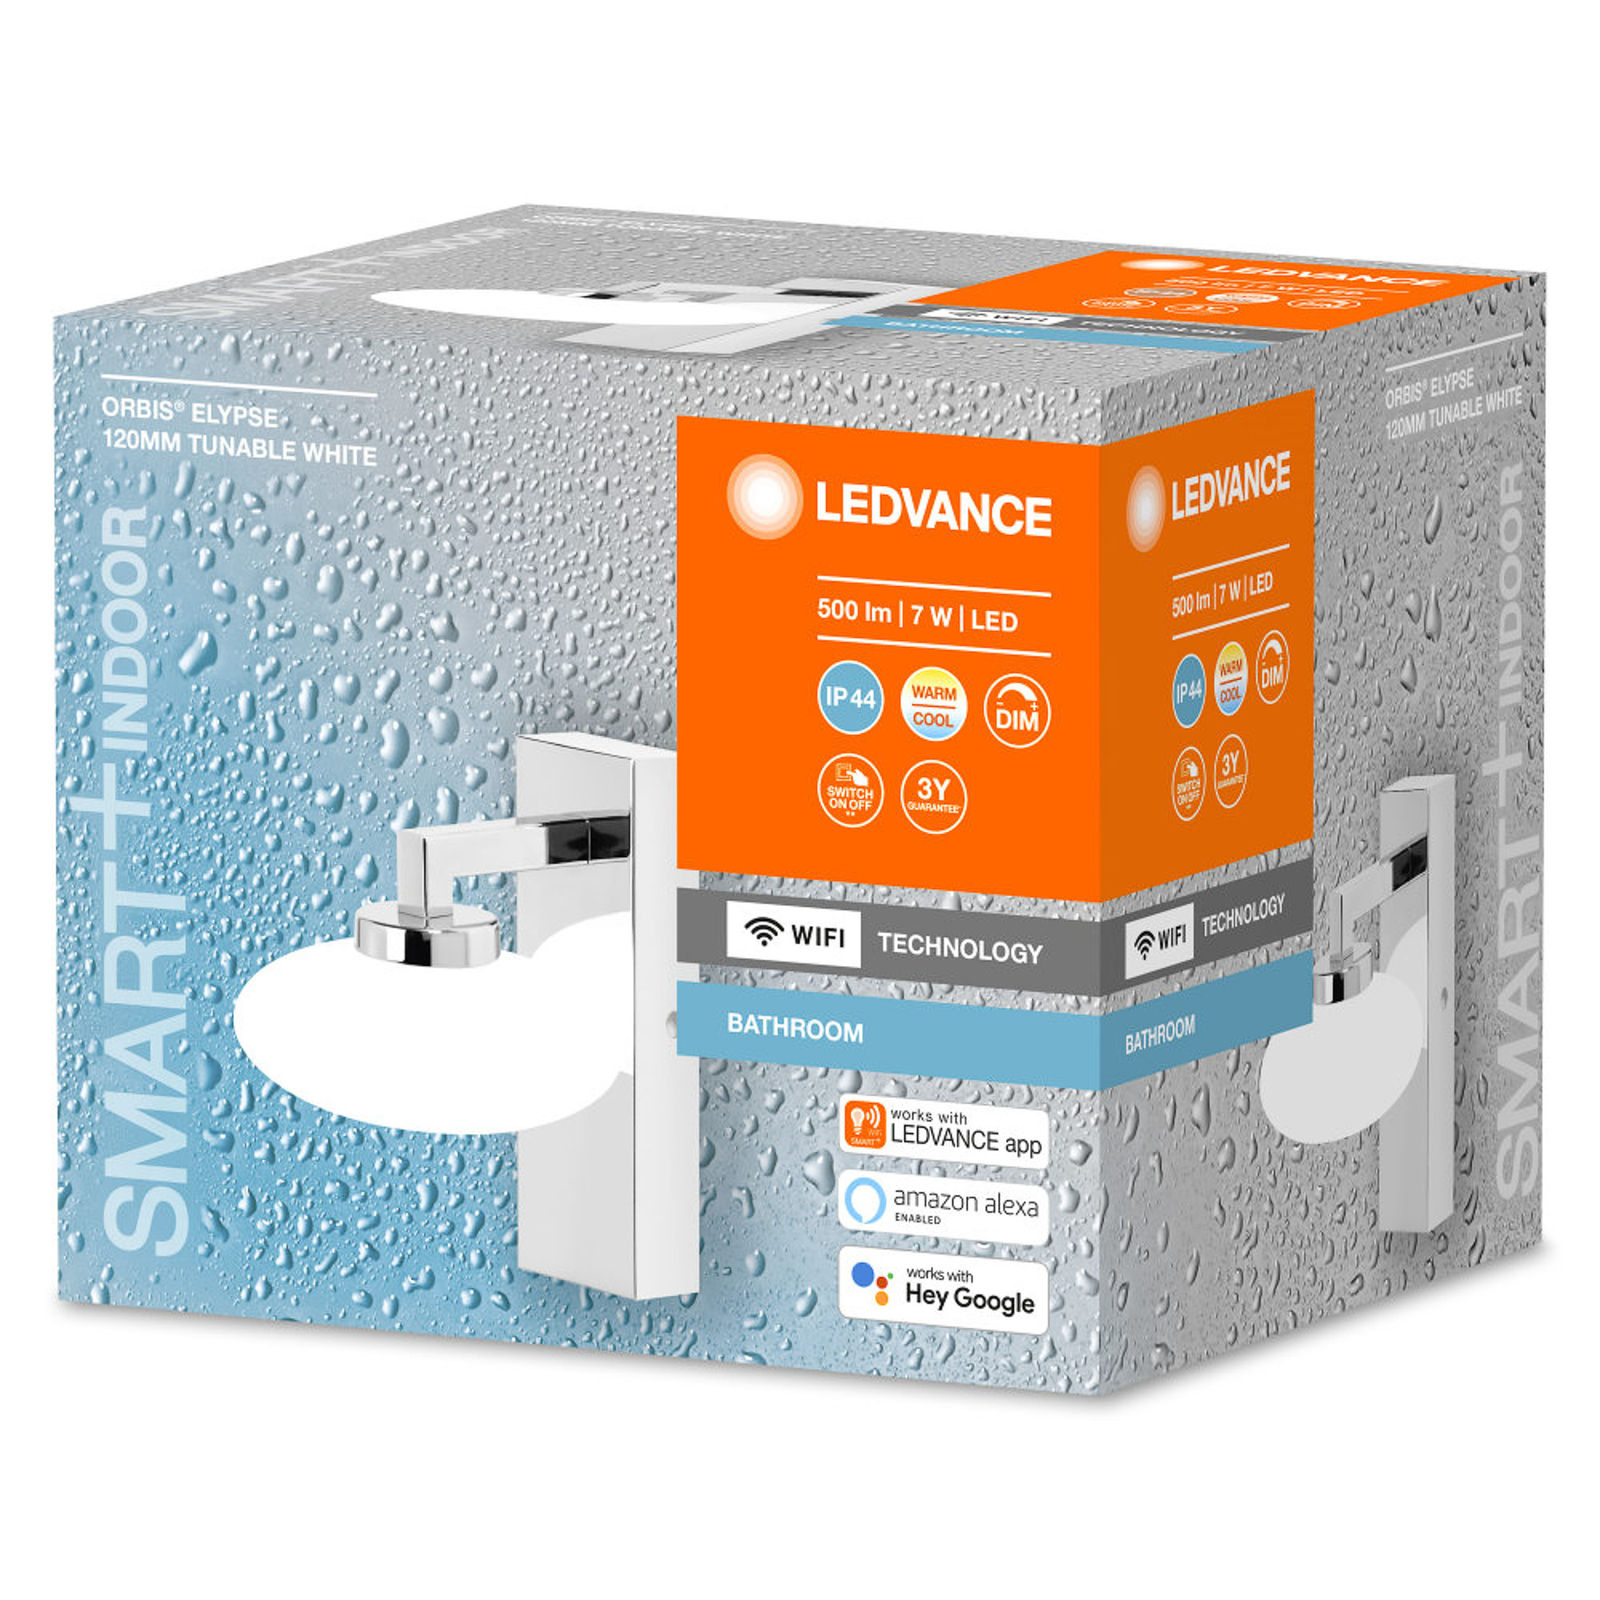 LEDVANCE SMART+ WiFi Orbis Wall Elypse, 1 lyskilde